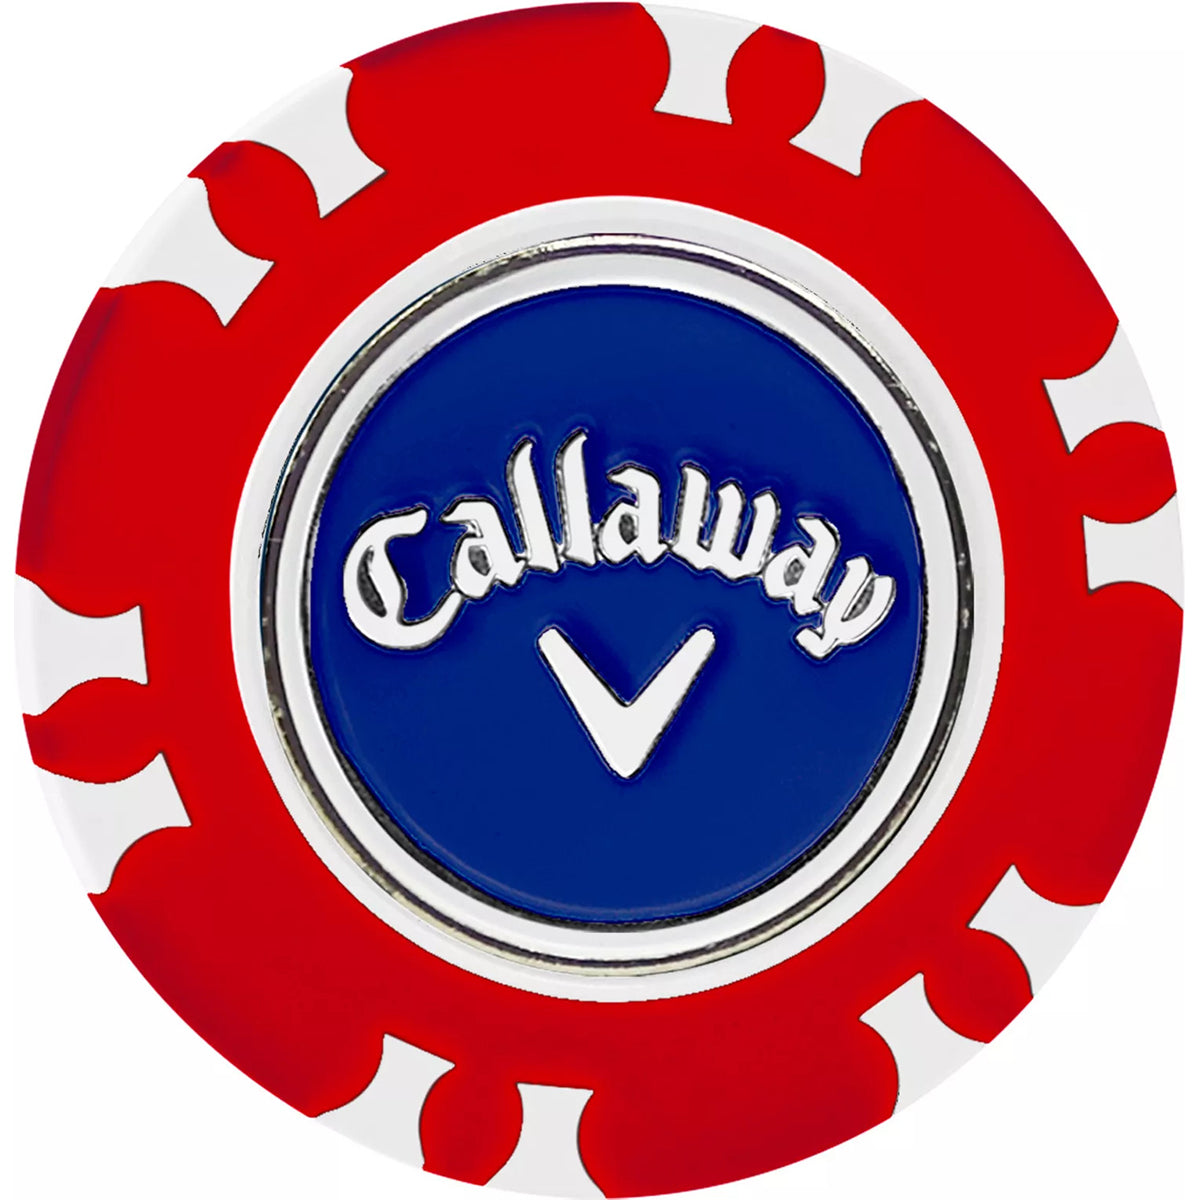 Callaway Dual-Mark Poker Chip Golf Ball Marker Callaway